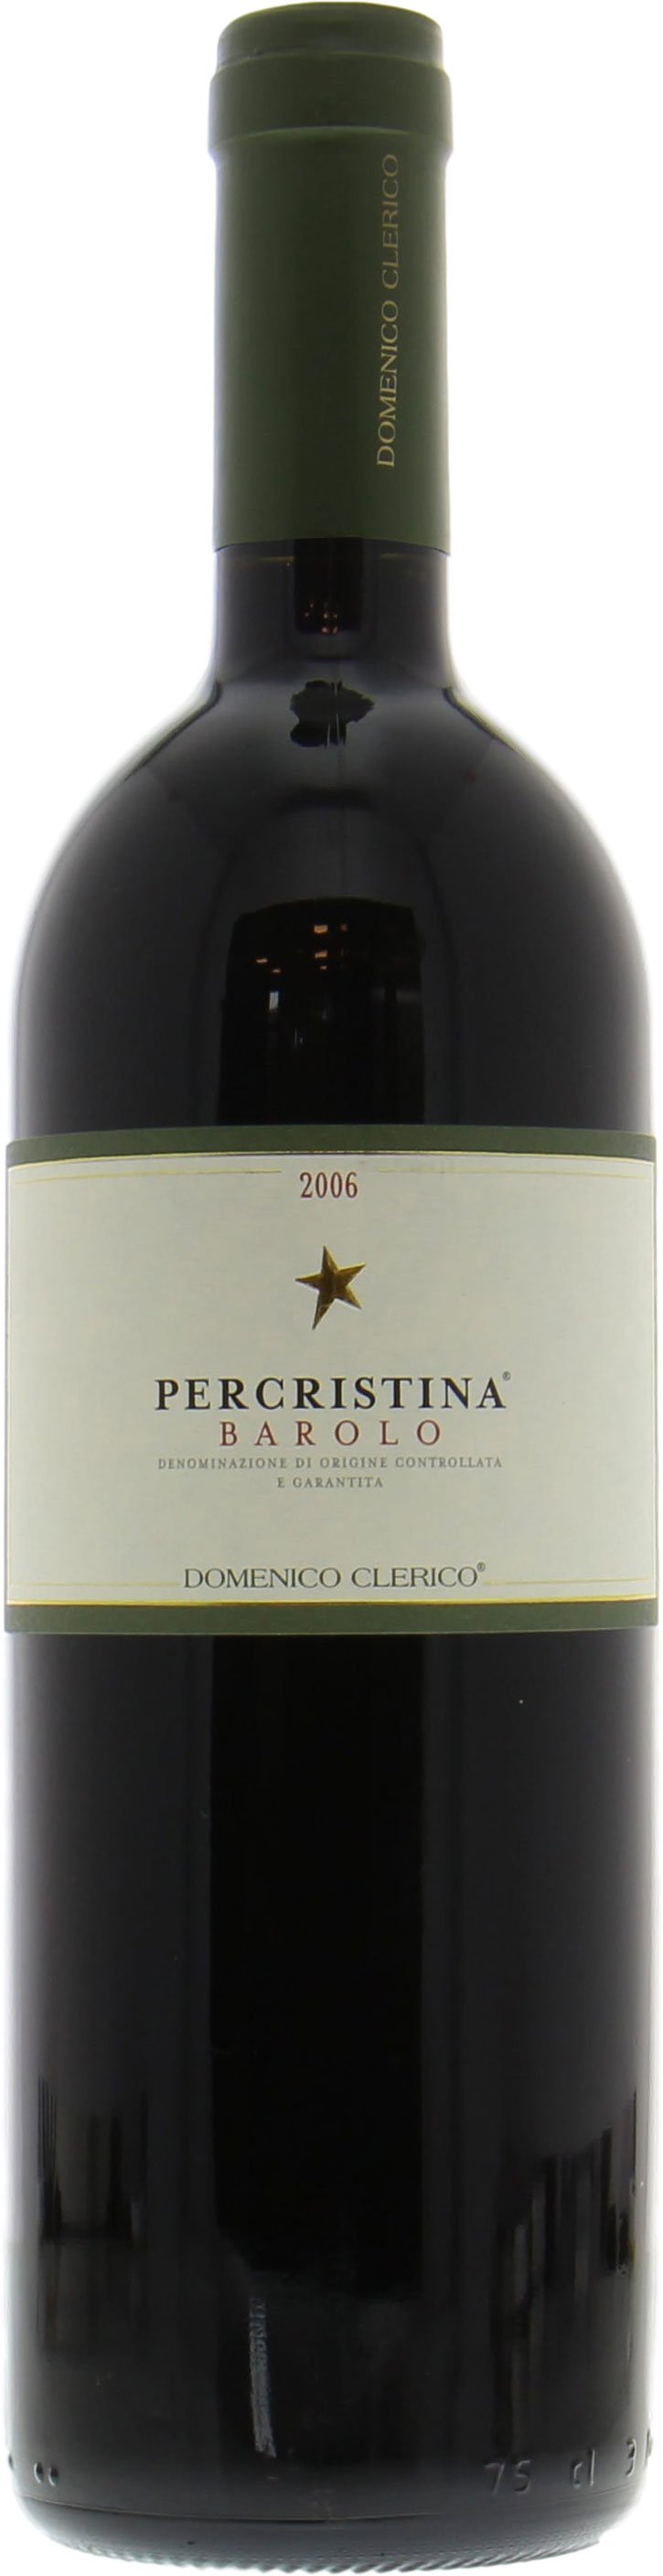 Domenico Clerico - Percristina Barolo 2006